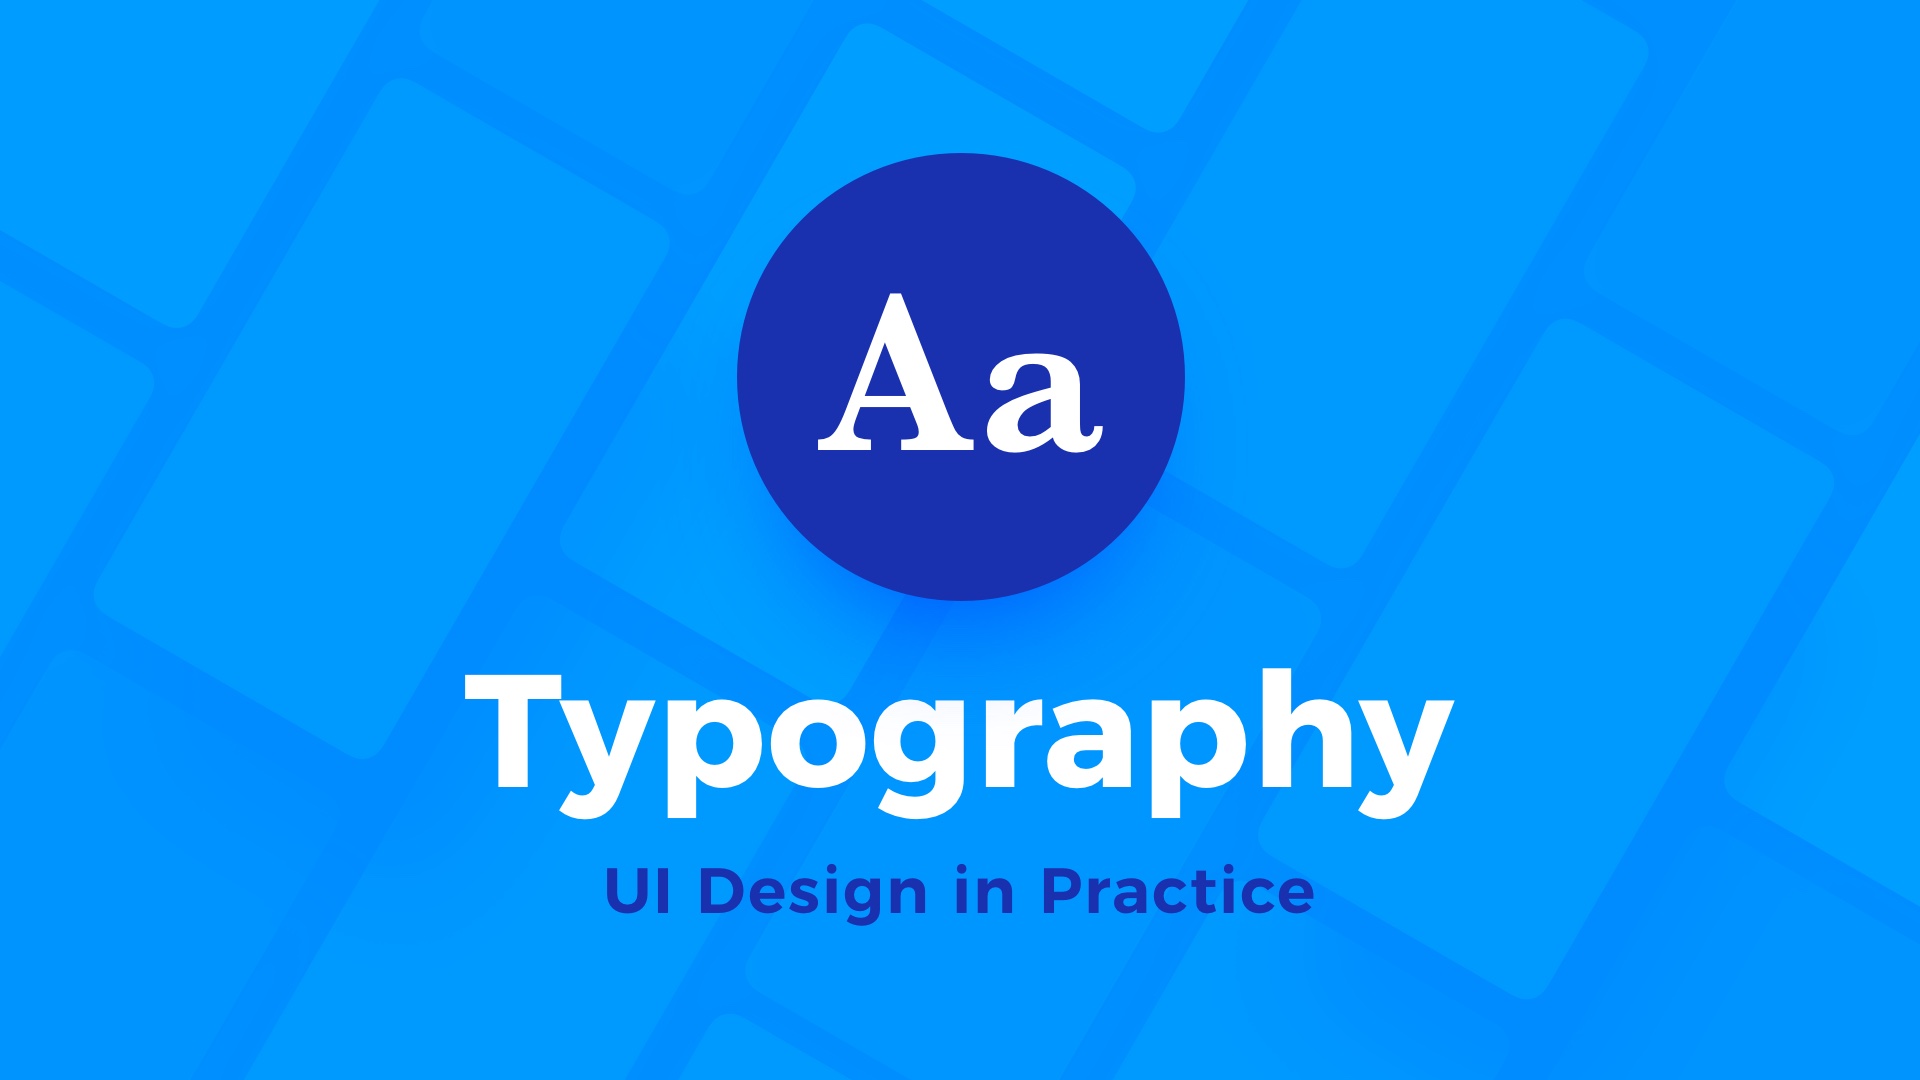 UI Design in Practice - Typography